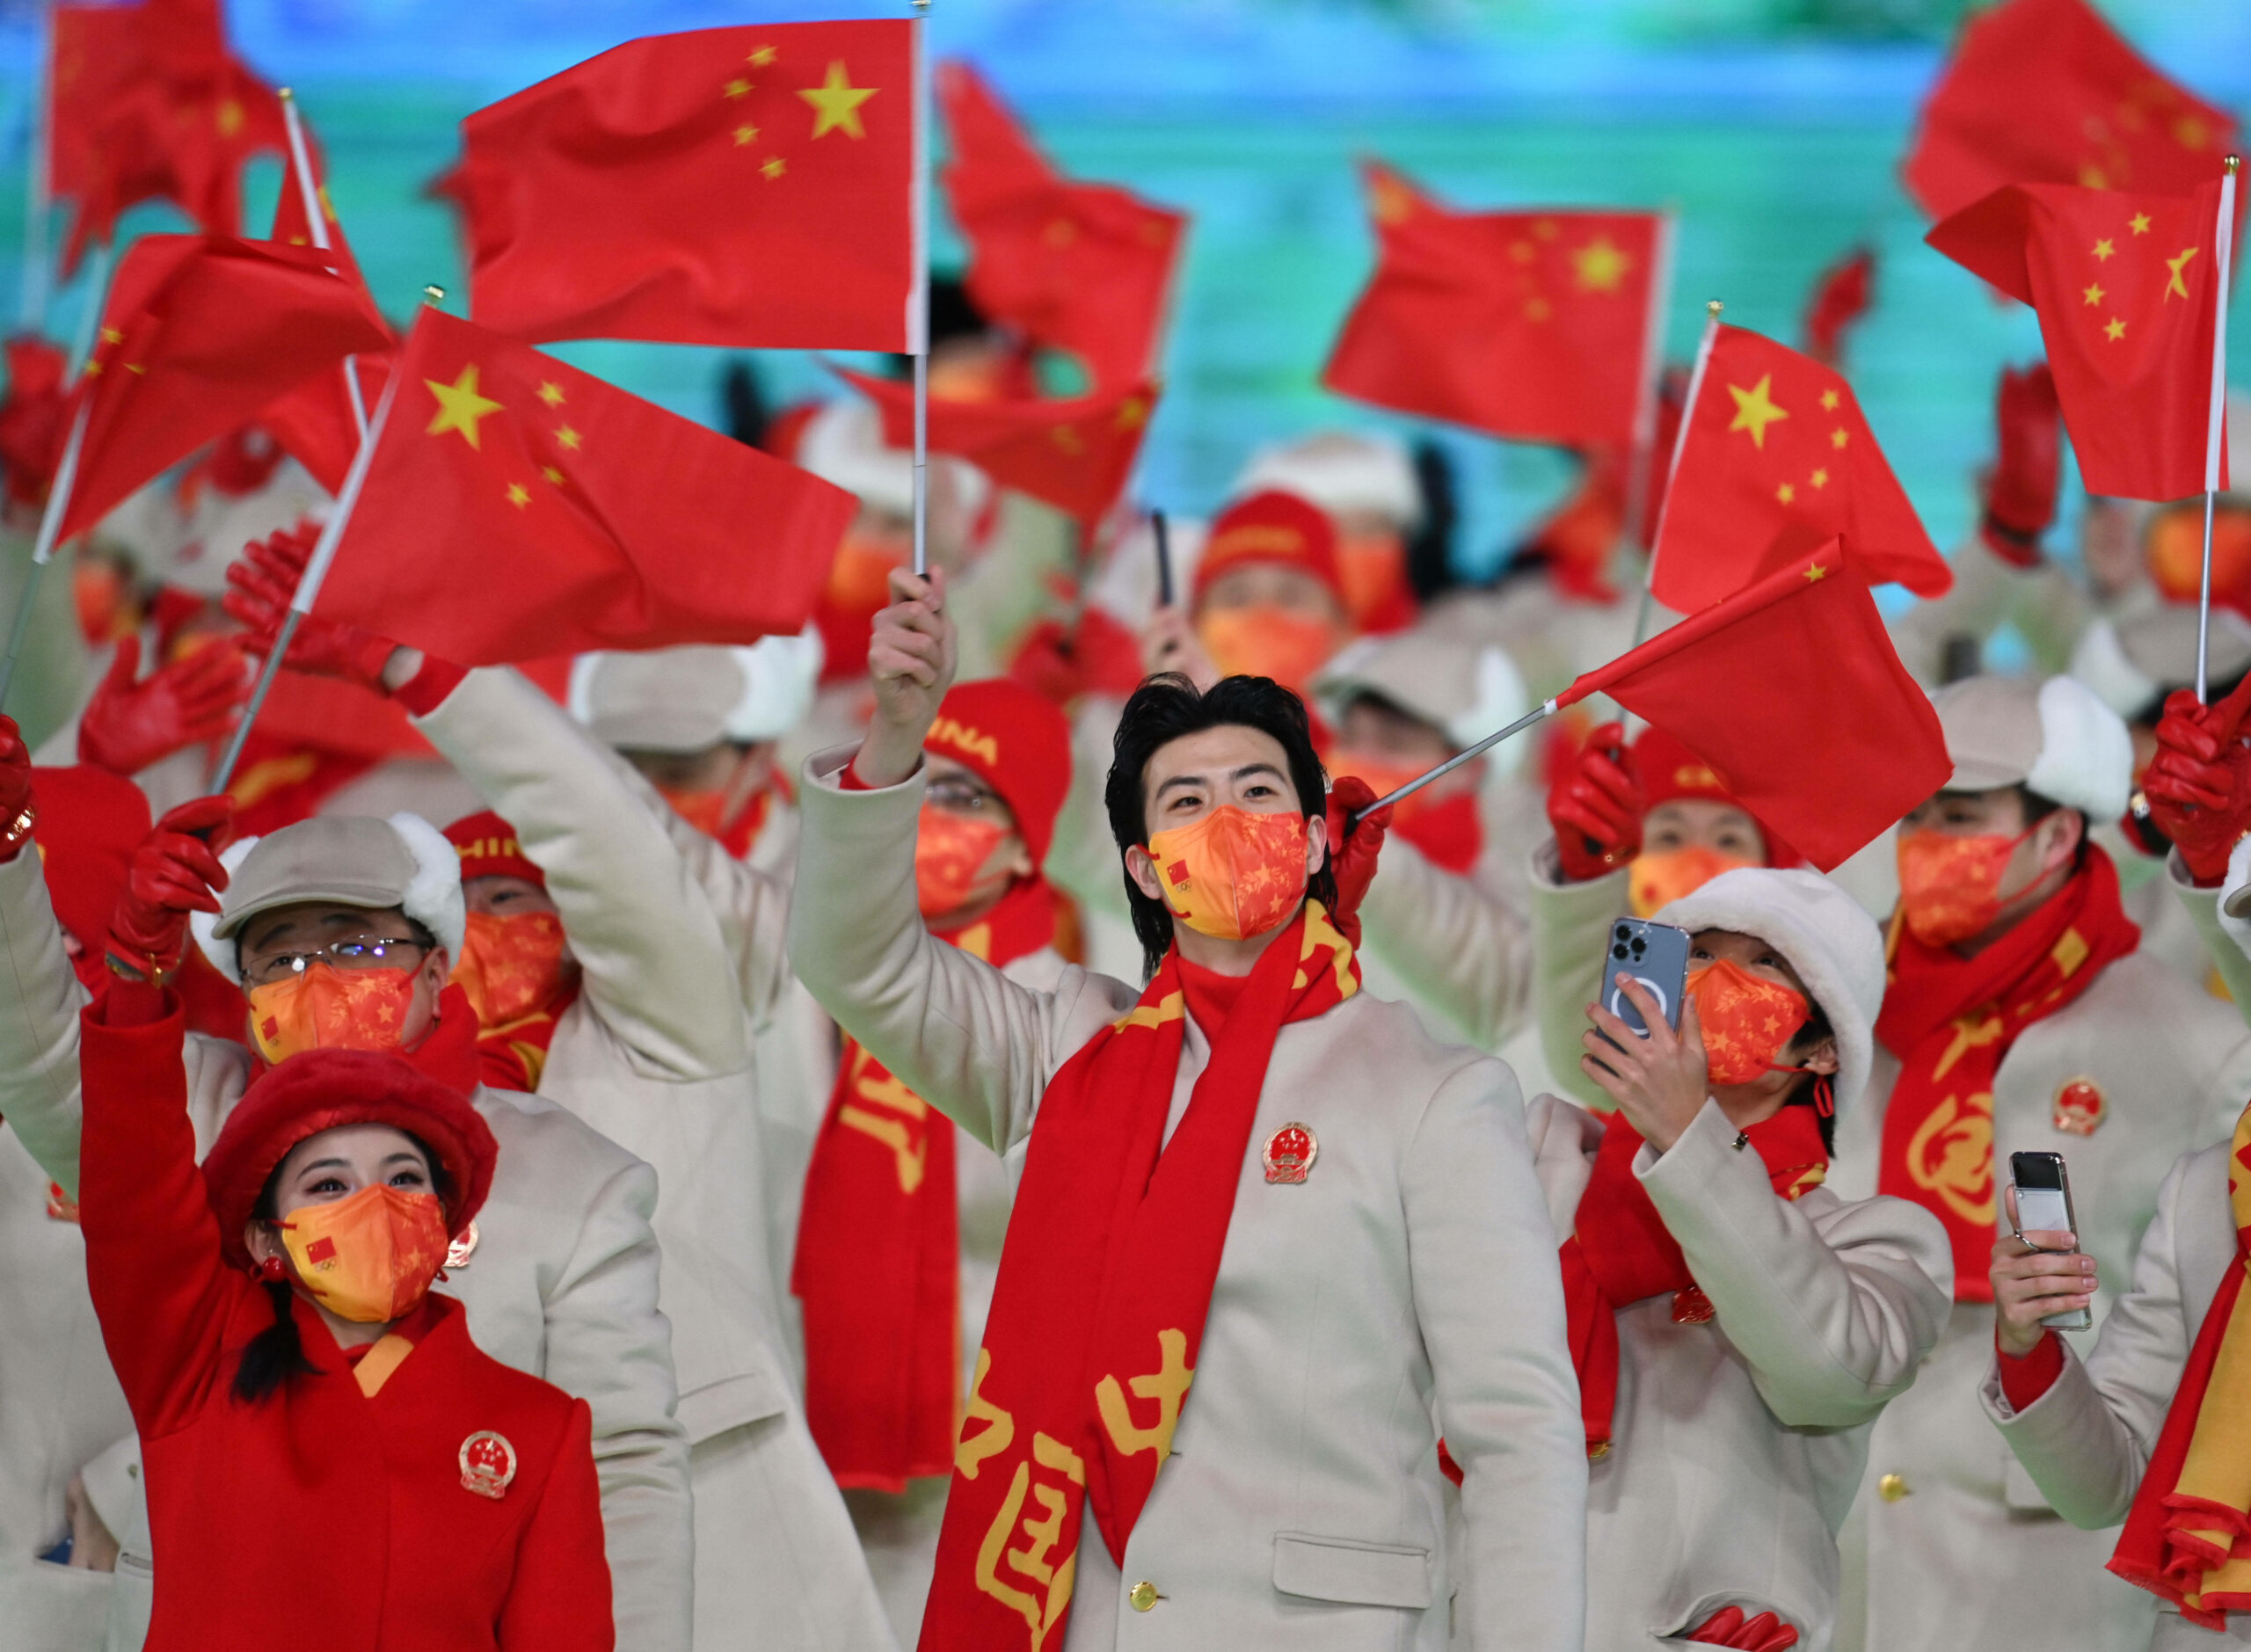 Олимпийская делегация Китайской Народной Республики марширует на Национальном стадионе во время церемонии открытия зимних Олимпийских игр 2022 года в Пекине. 4 февраля 2022 года.   Фото Li Ga/Xinhua/Scanpix/LETA